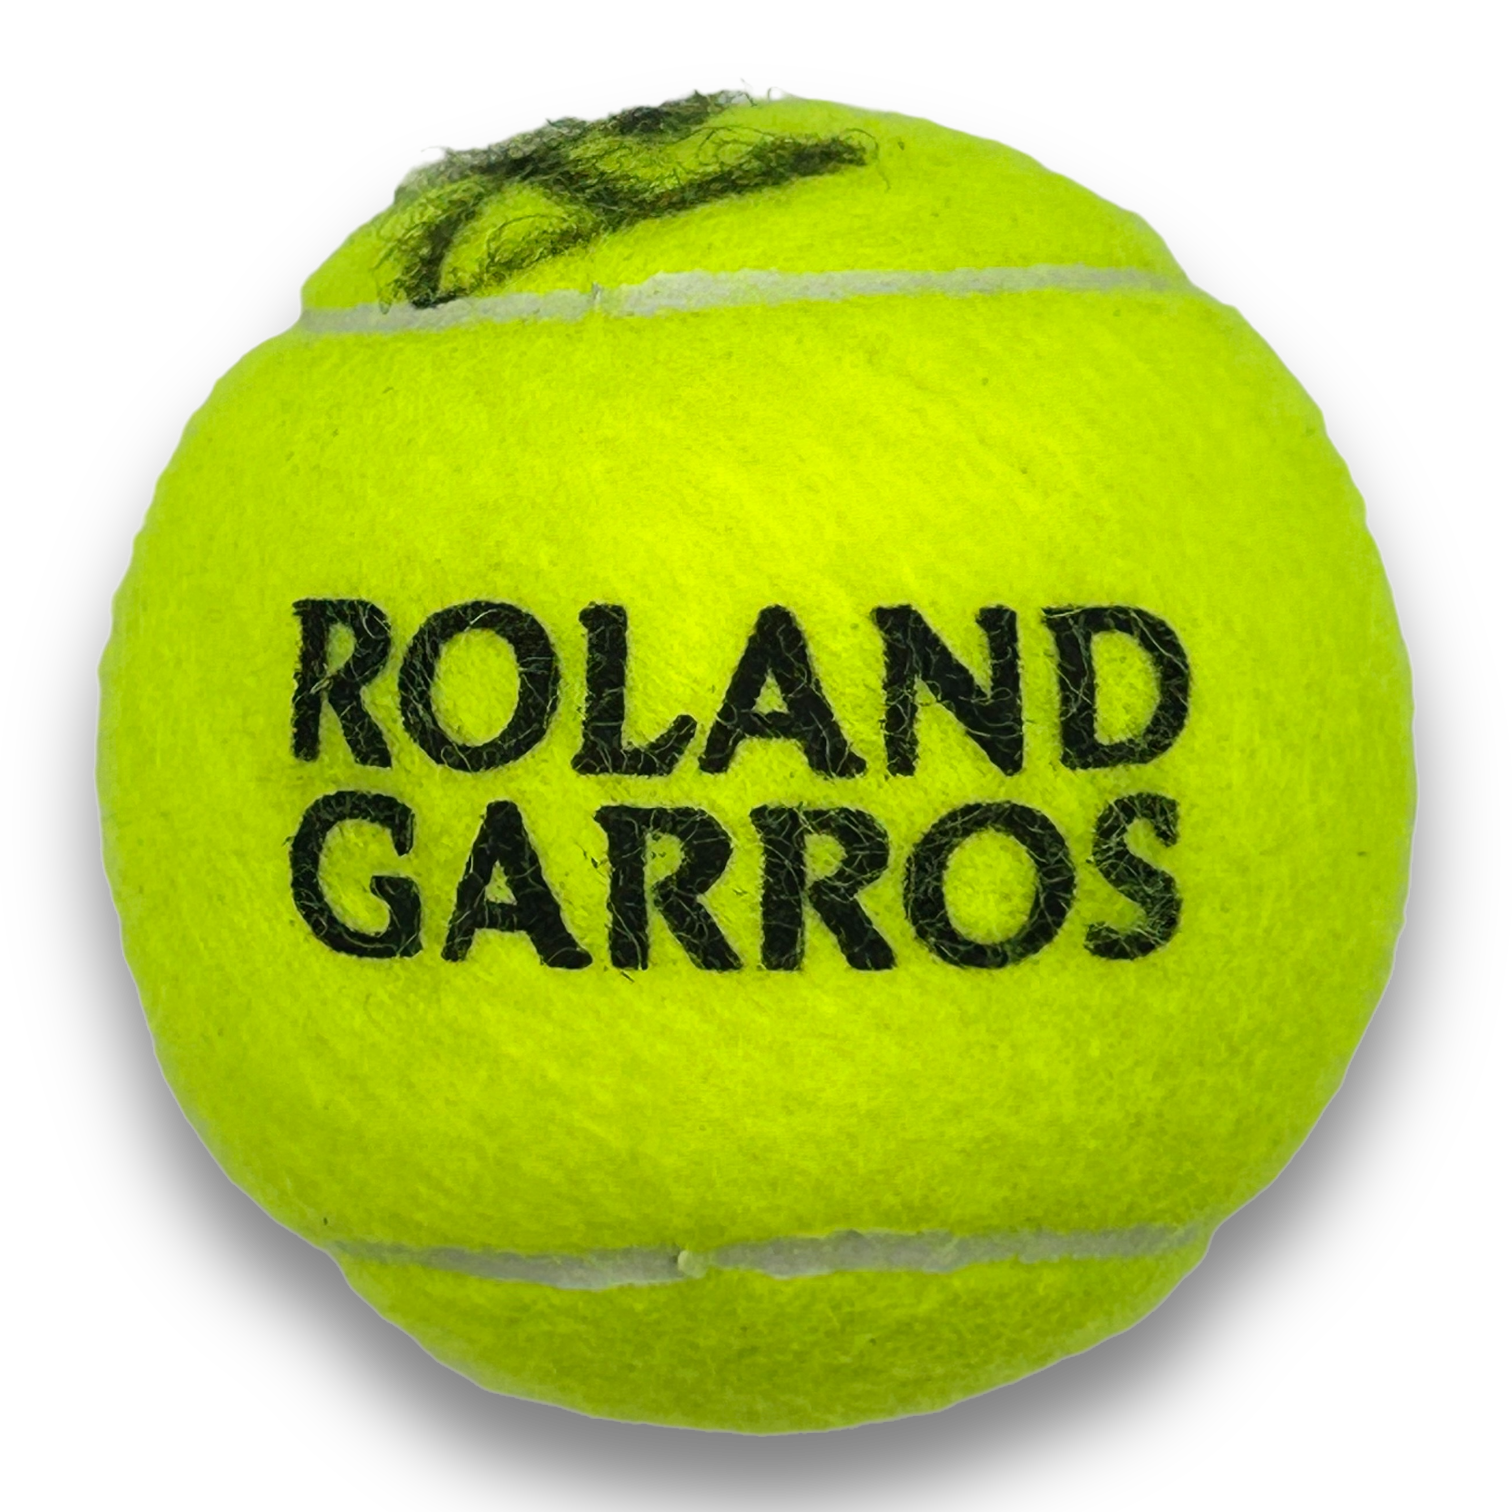 ARTHUR FILS SIGNED WILSON 3 ROLAND GARROS TENNIS BALL (AFTAL COA)